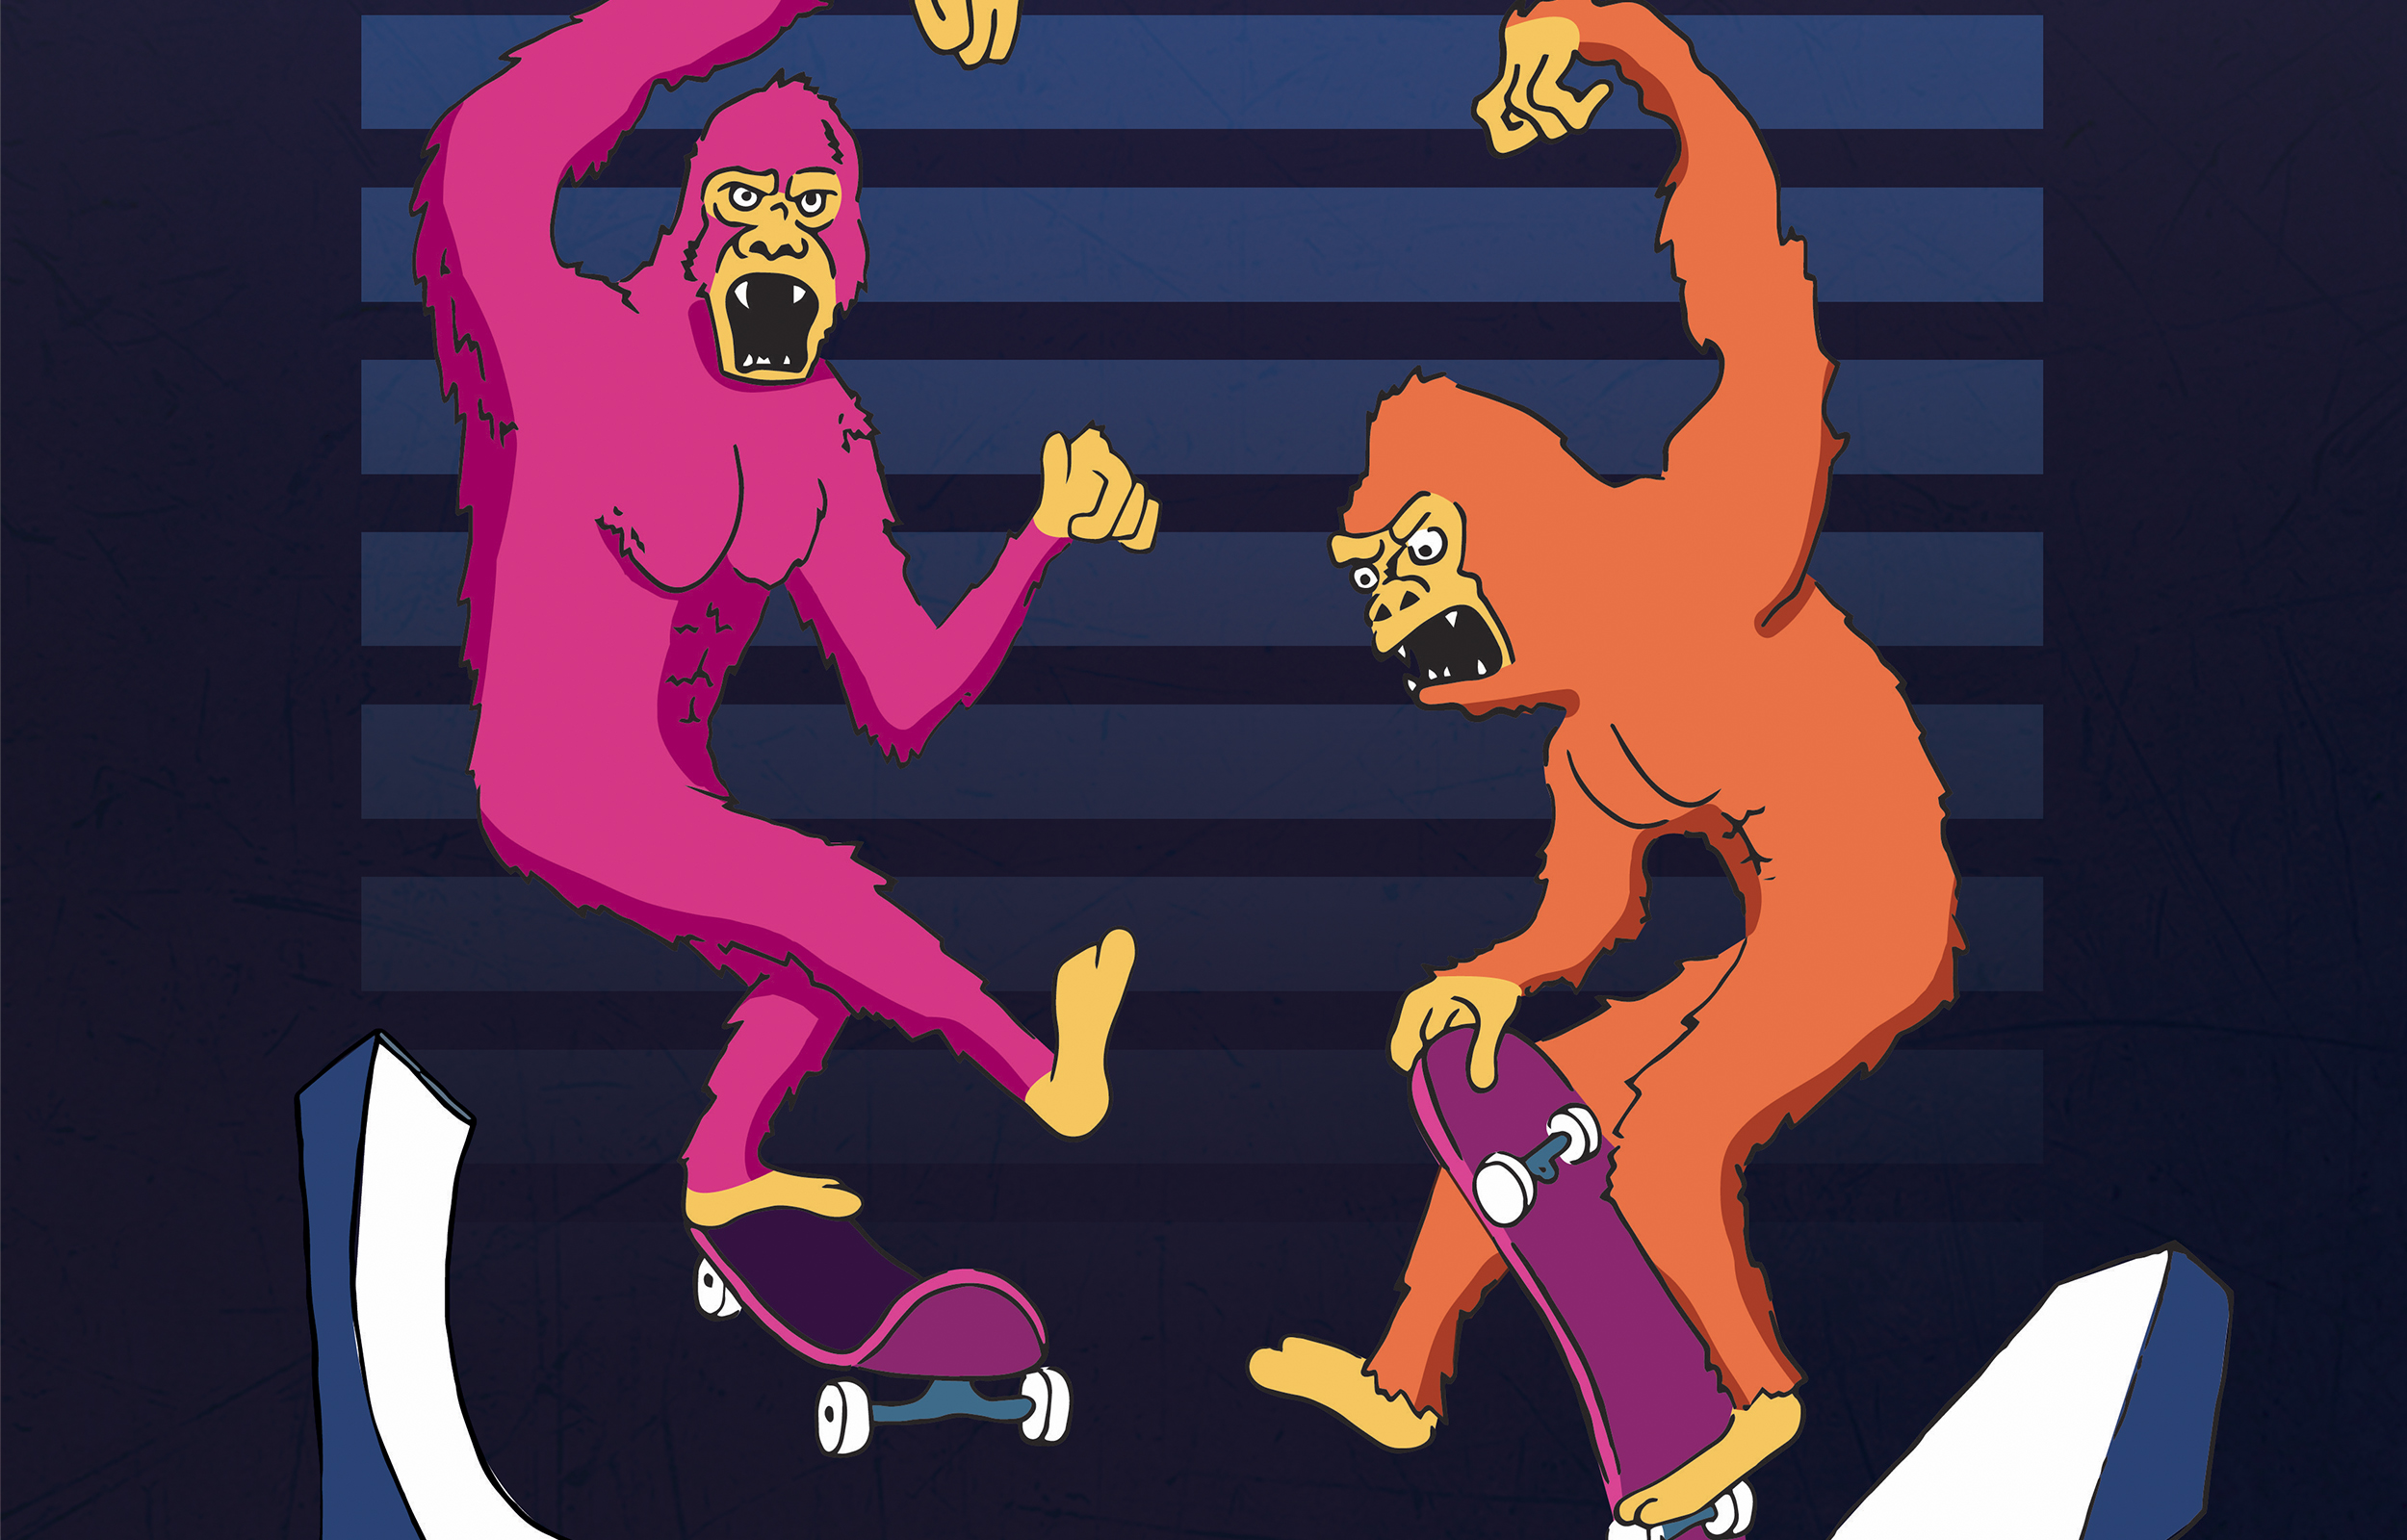 Affiche réalisé pour le contest de skate organisé par la marque Horror Juice